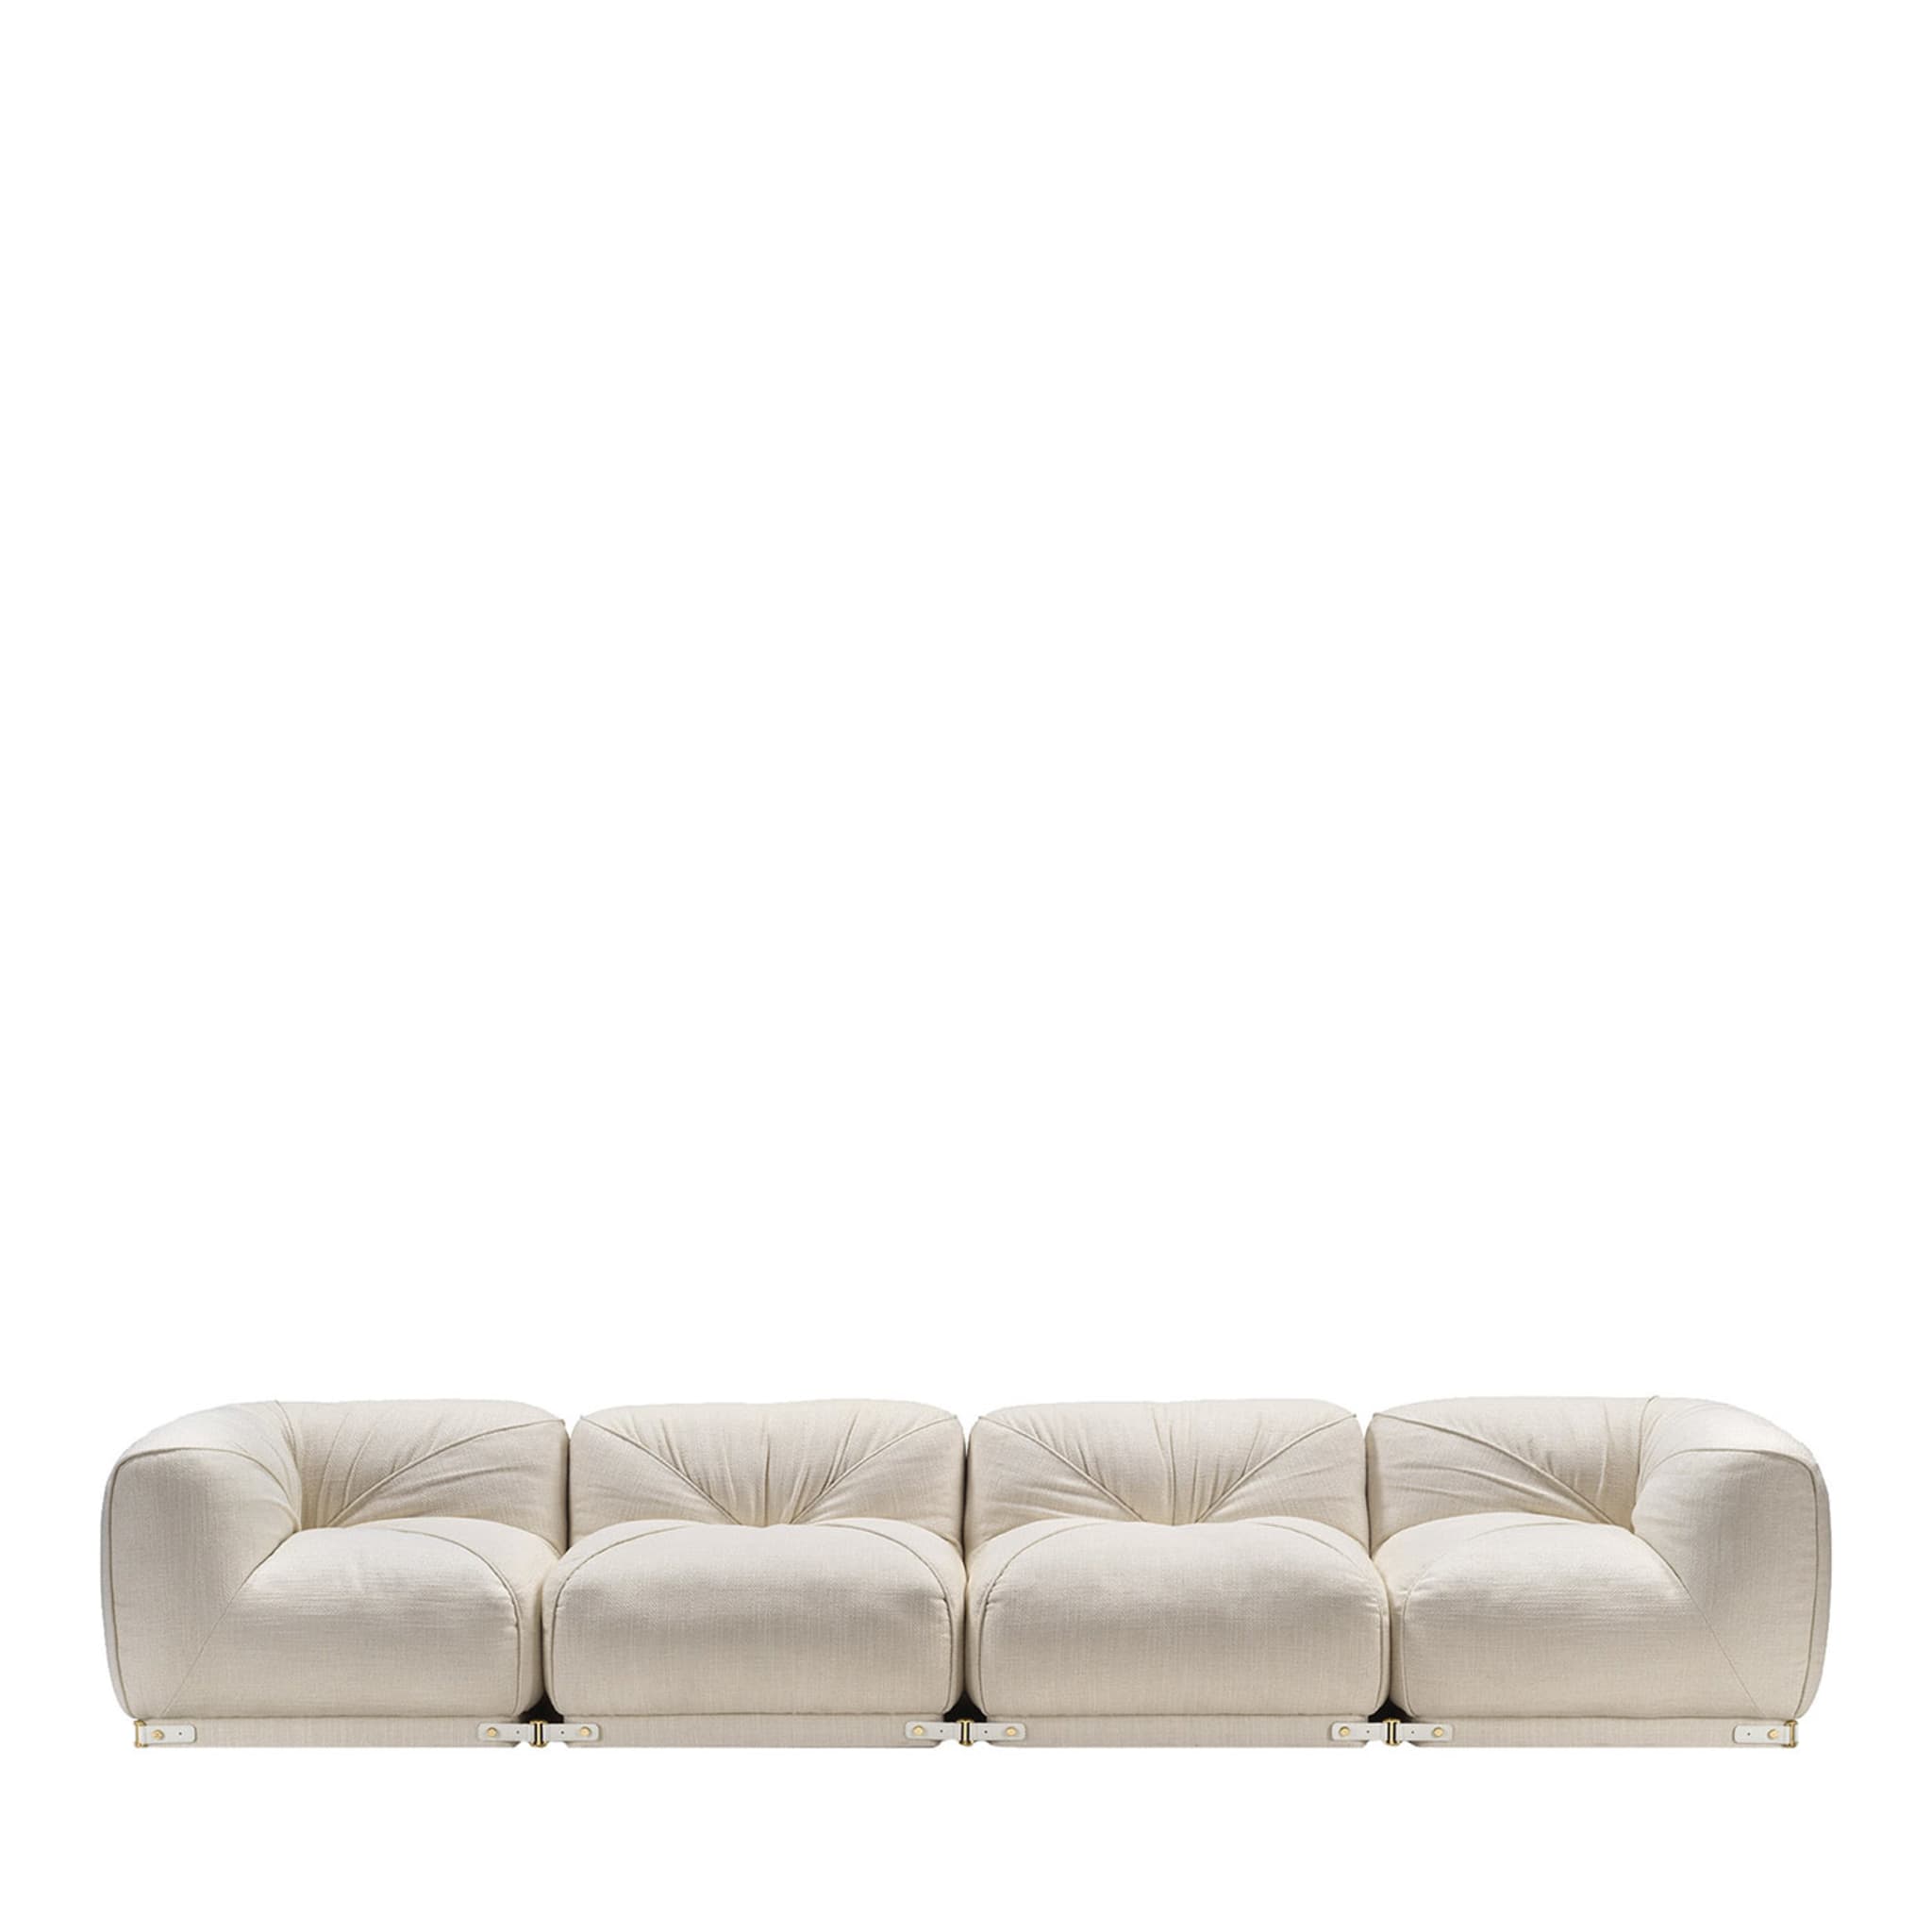 Leisure 4-sitzer weißes sofa by Lorenza Bozzoli - Hauptansicht